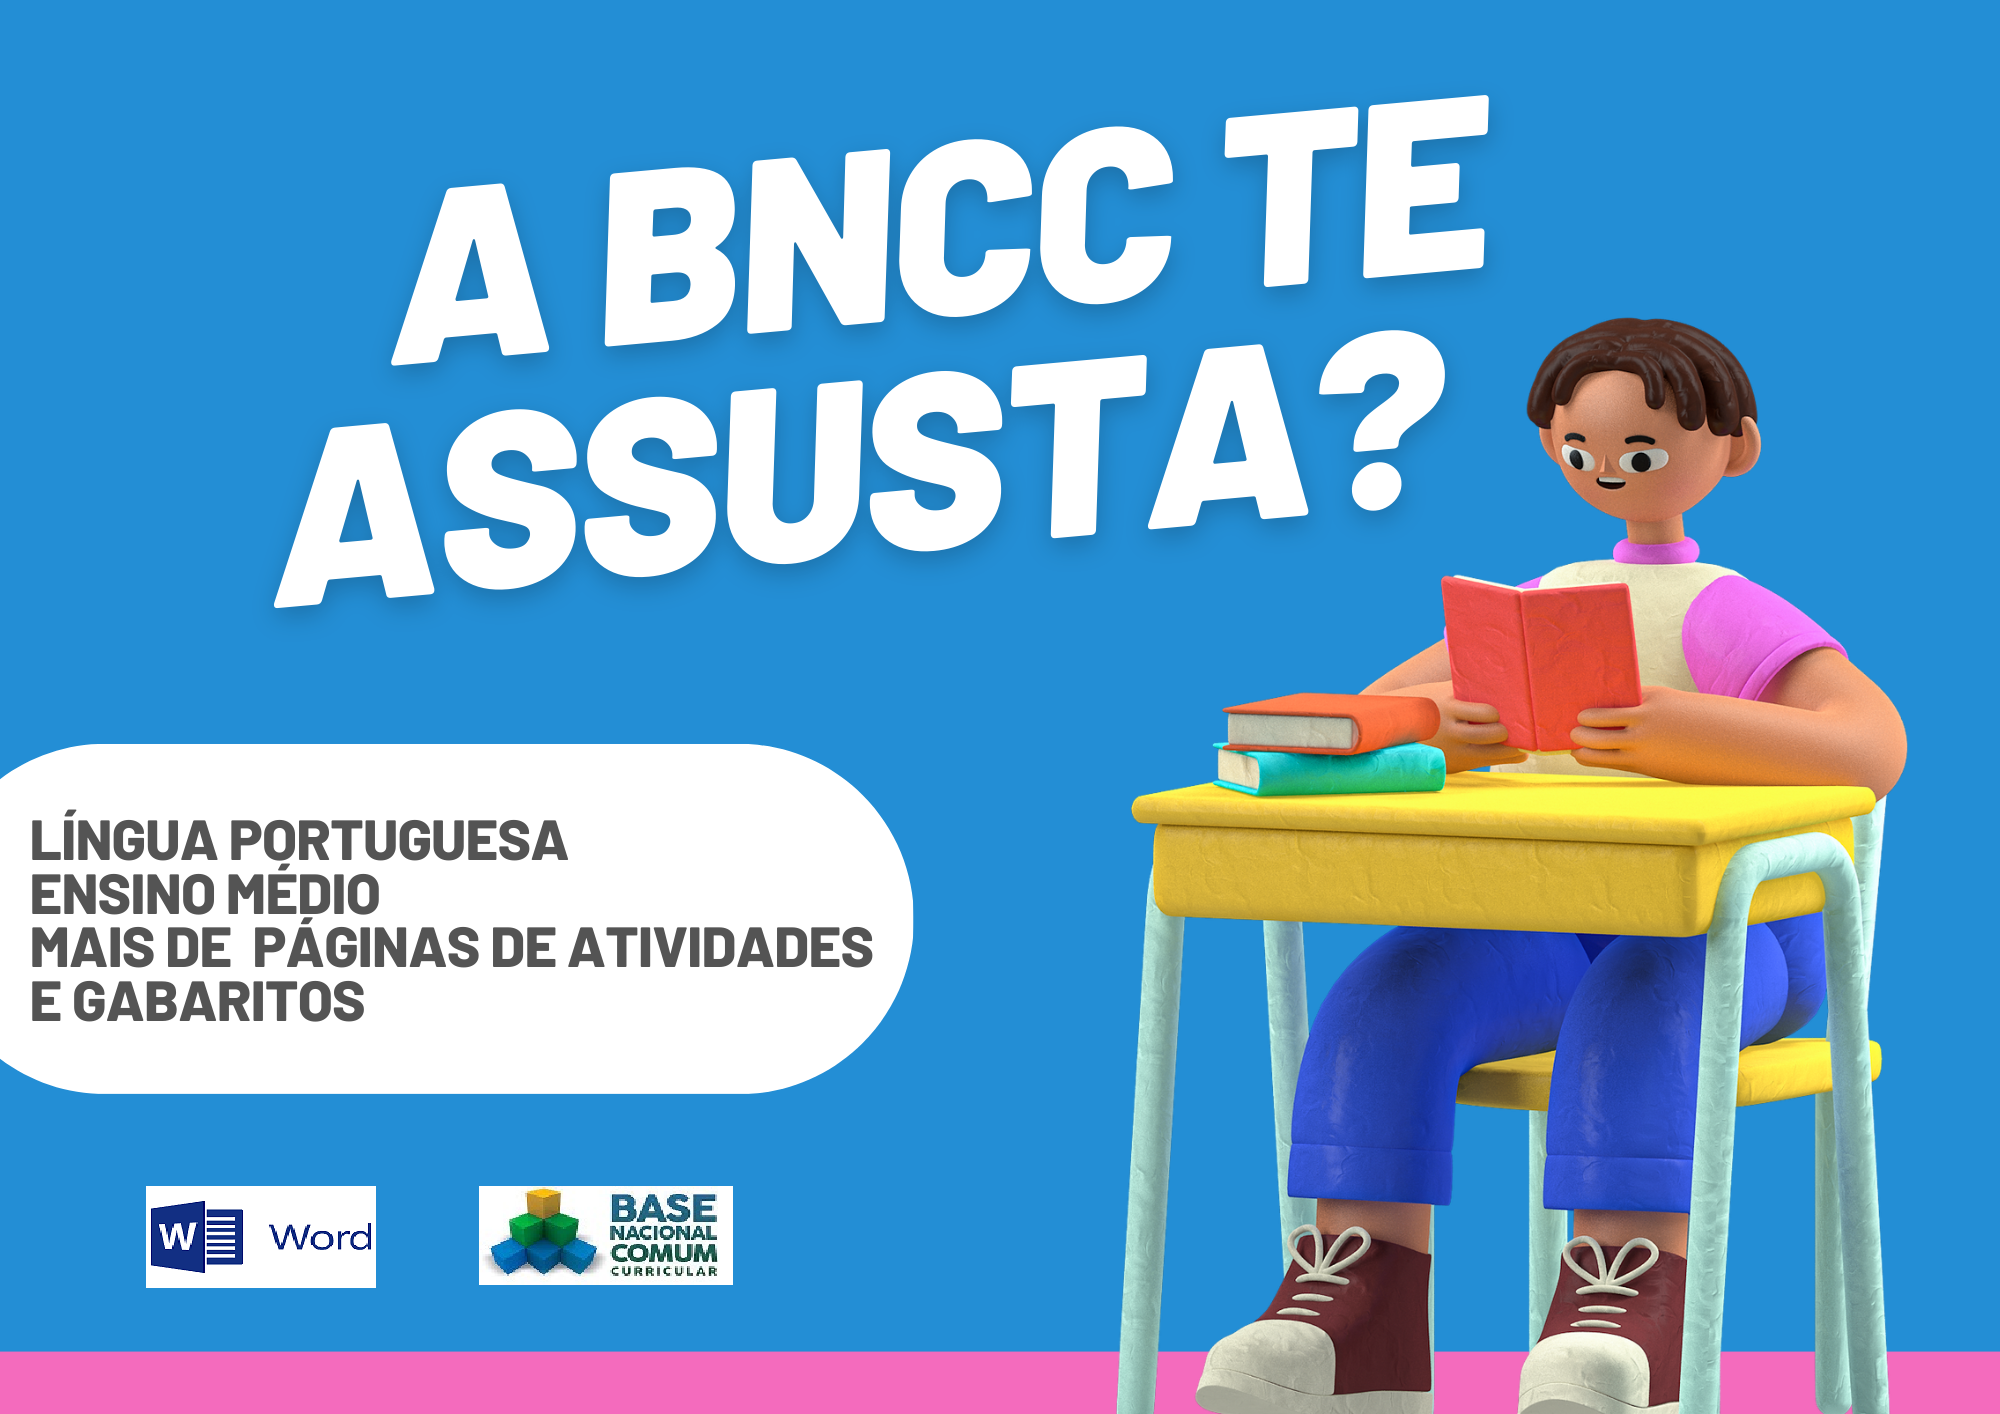 A BNCC te assusta língua portuguesa ensino médio mais de páginas de atividades e gabaritos com um aluno segurando um livro e os símbolos do Word e da BNCC